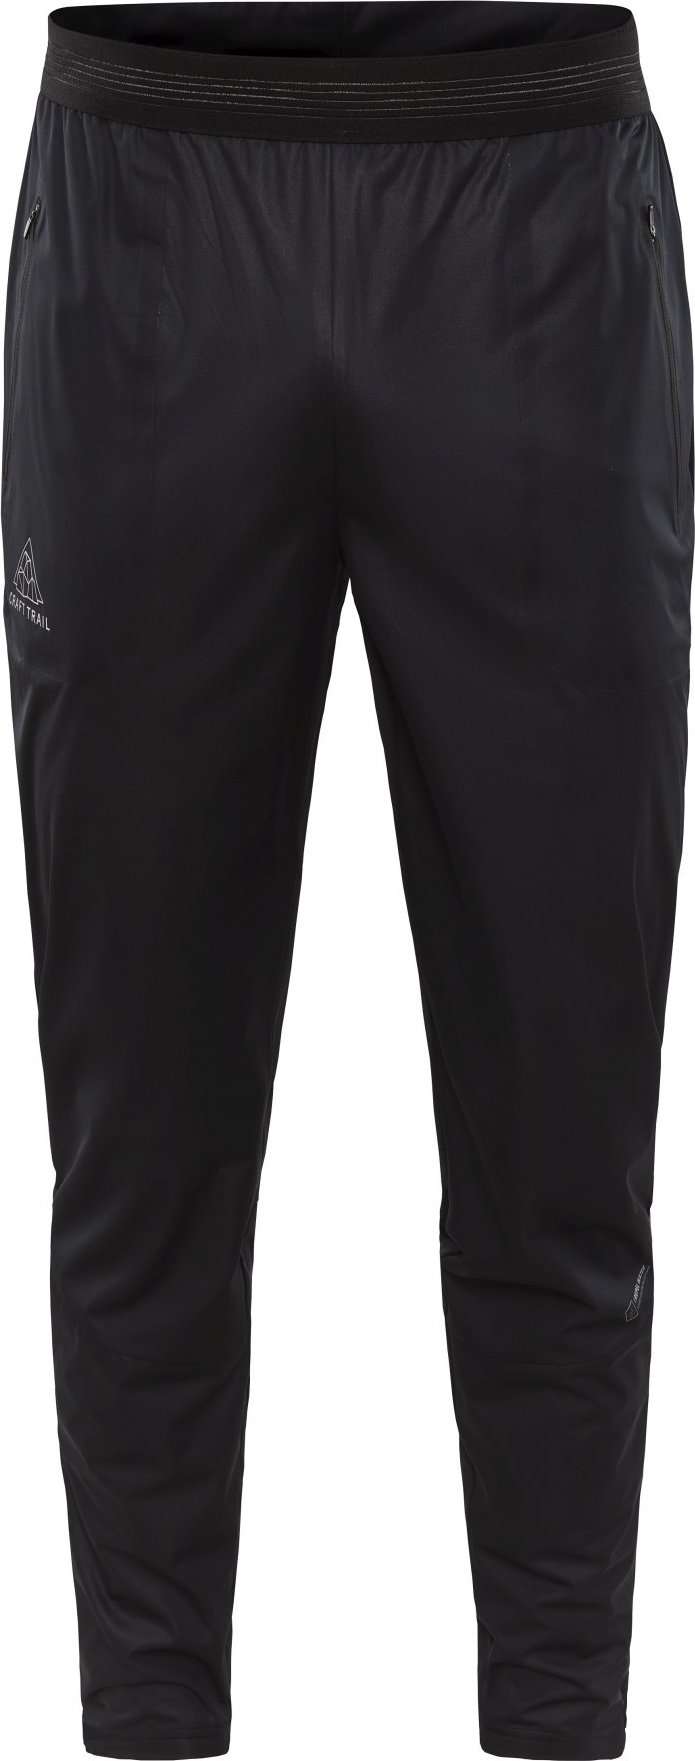 Pánské běžecké kalhoty CRAFT Pro Hydro černé Velikost: L